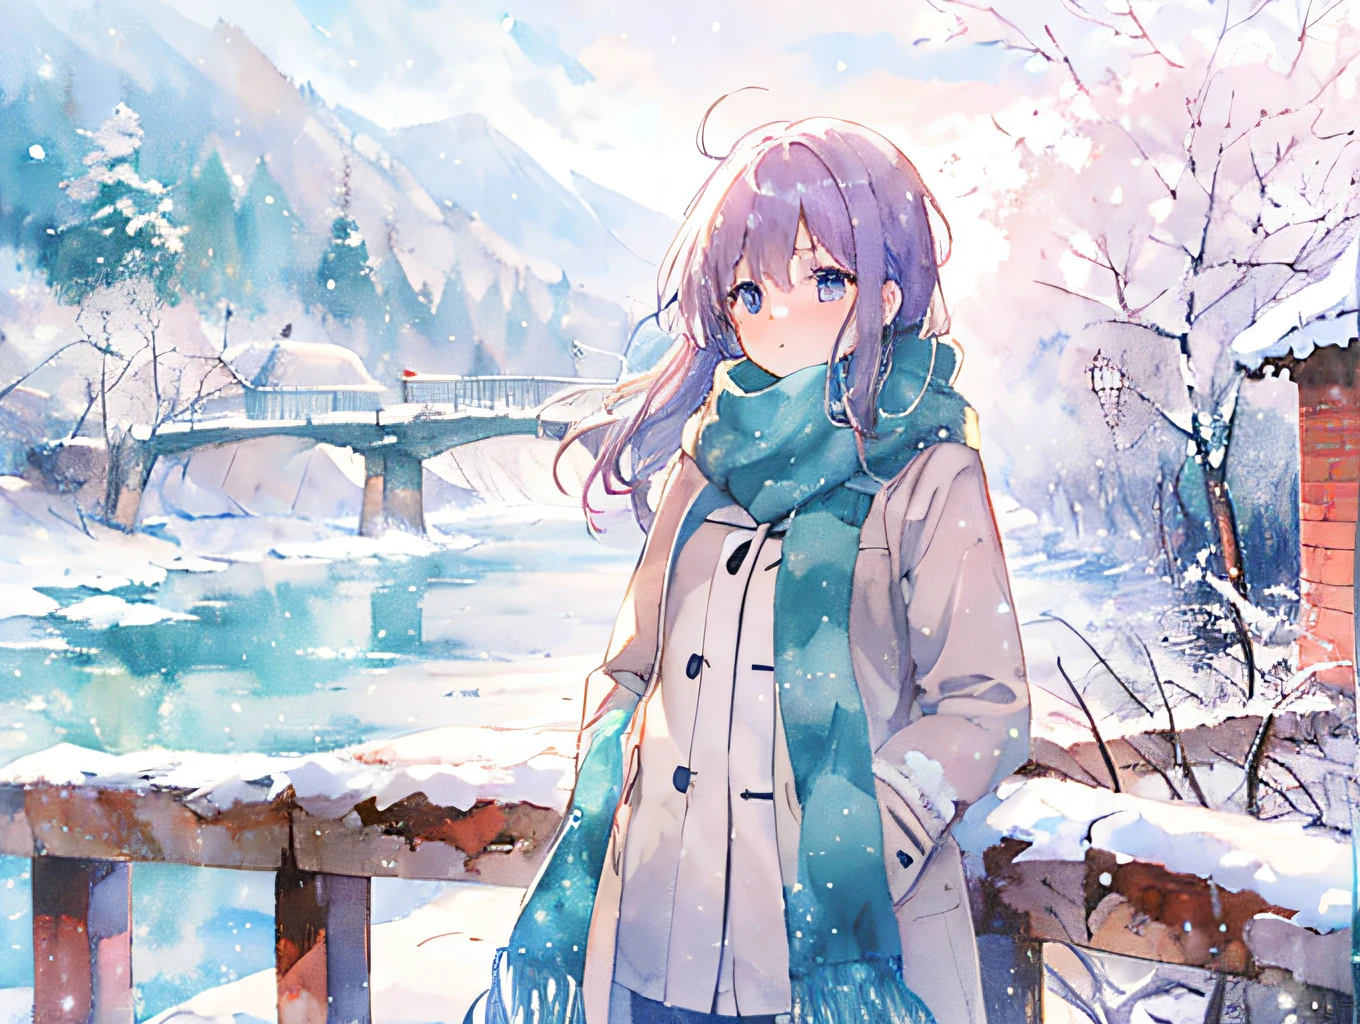 アニメ風の女の子, 橋, 雪景色, 暖かいコートとスカーフ, 目に見える息, 柔らかい, 水彩画のようなアニメスタイル, 白と青, 雪の日,